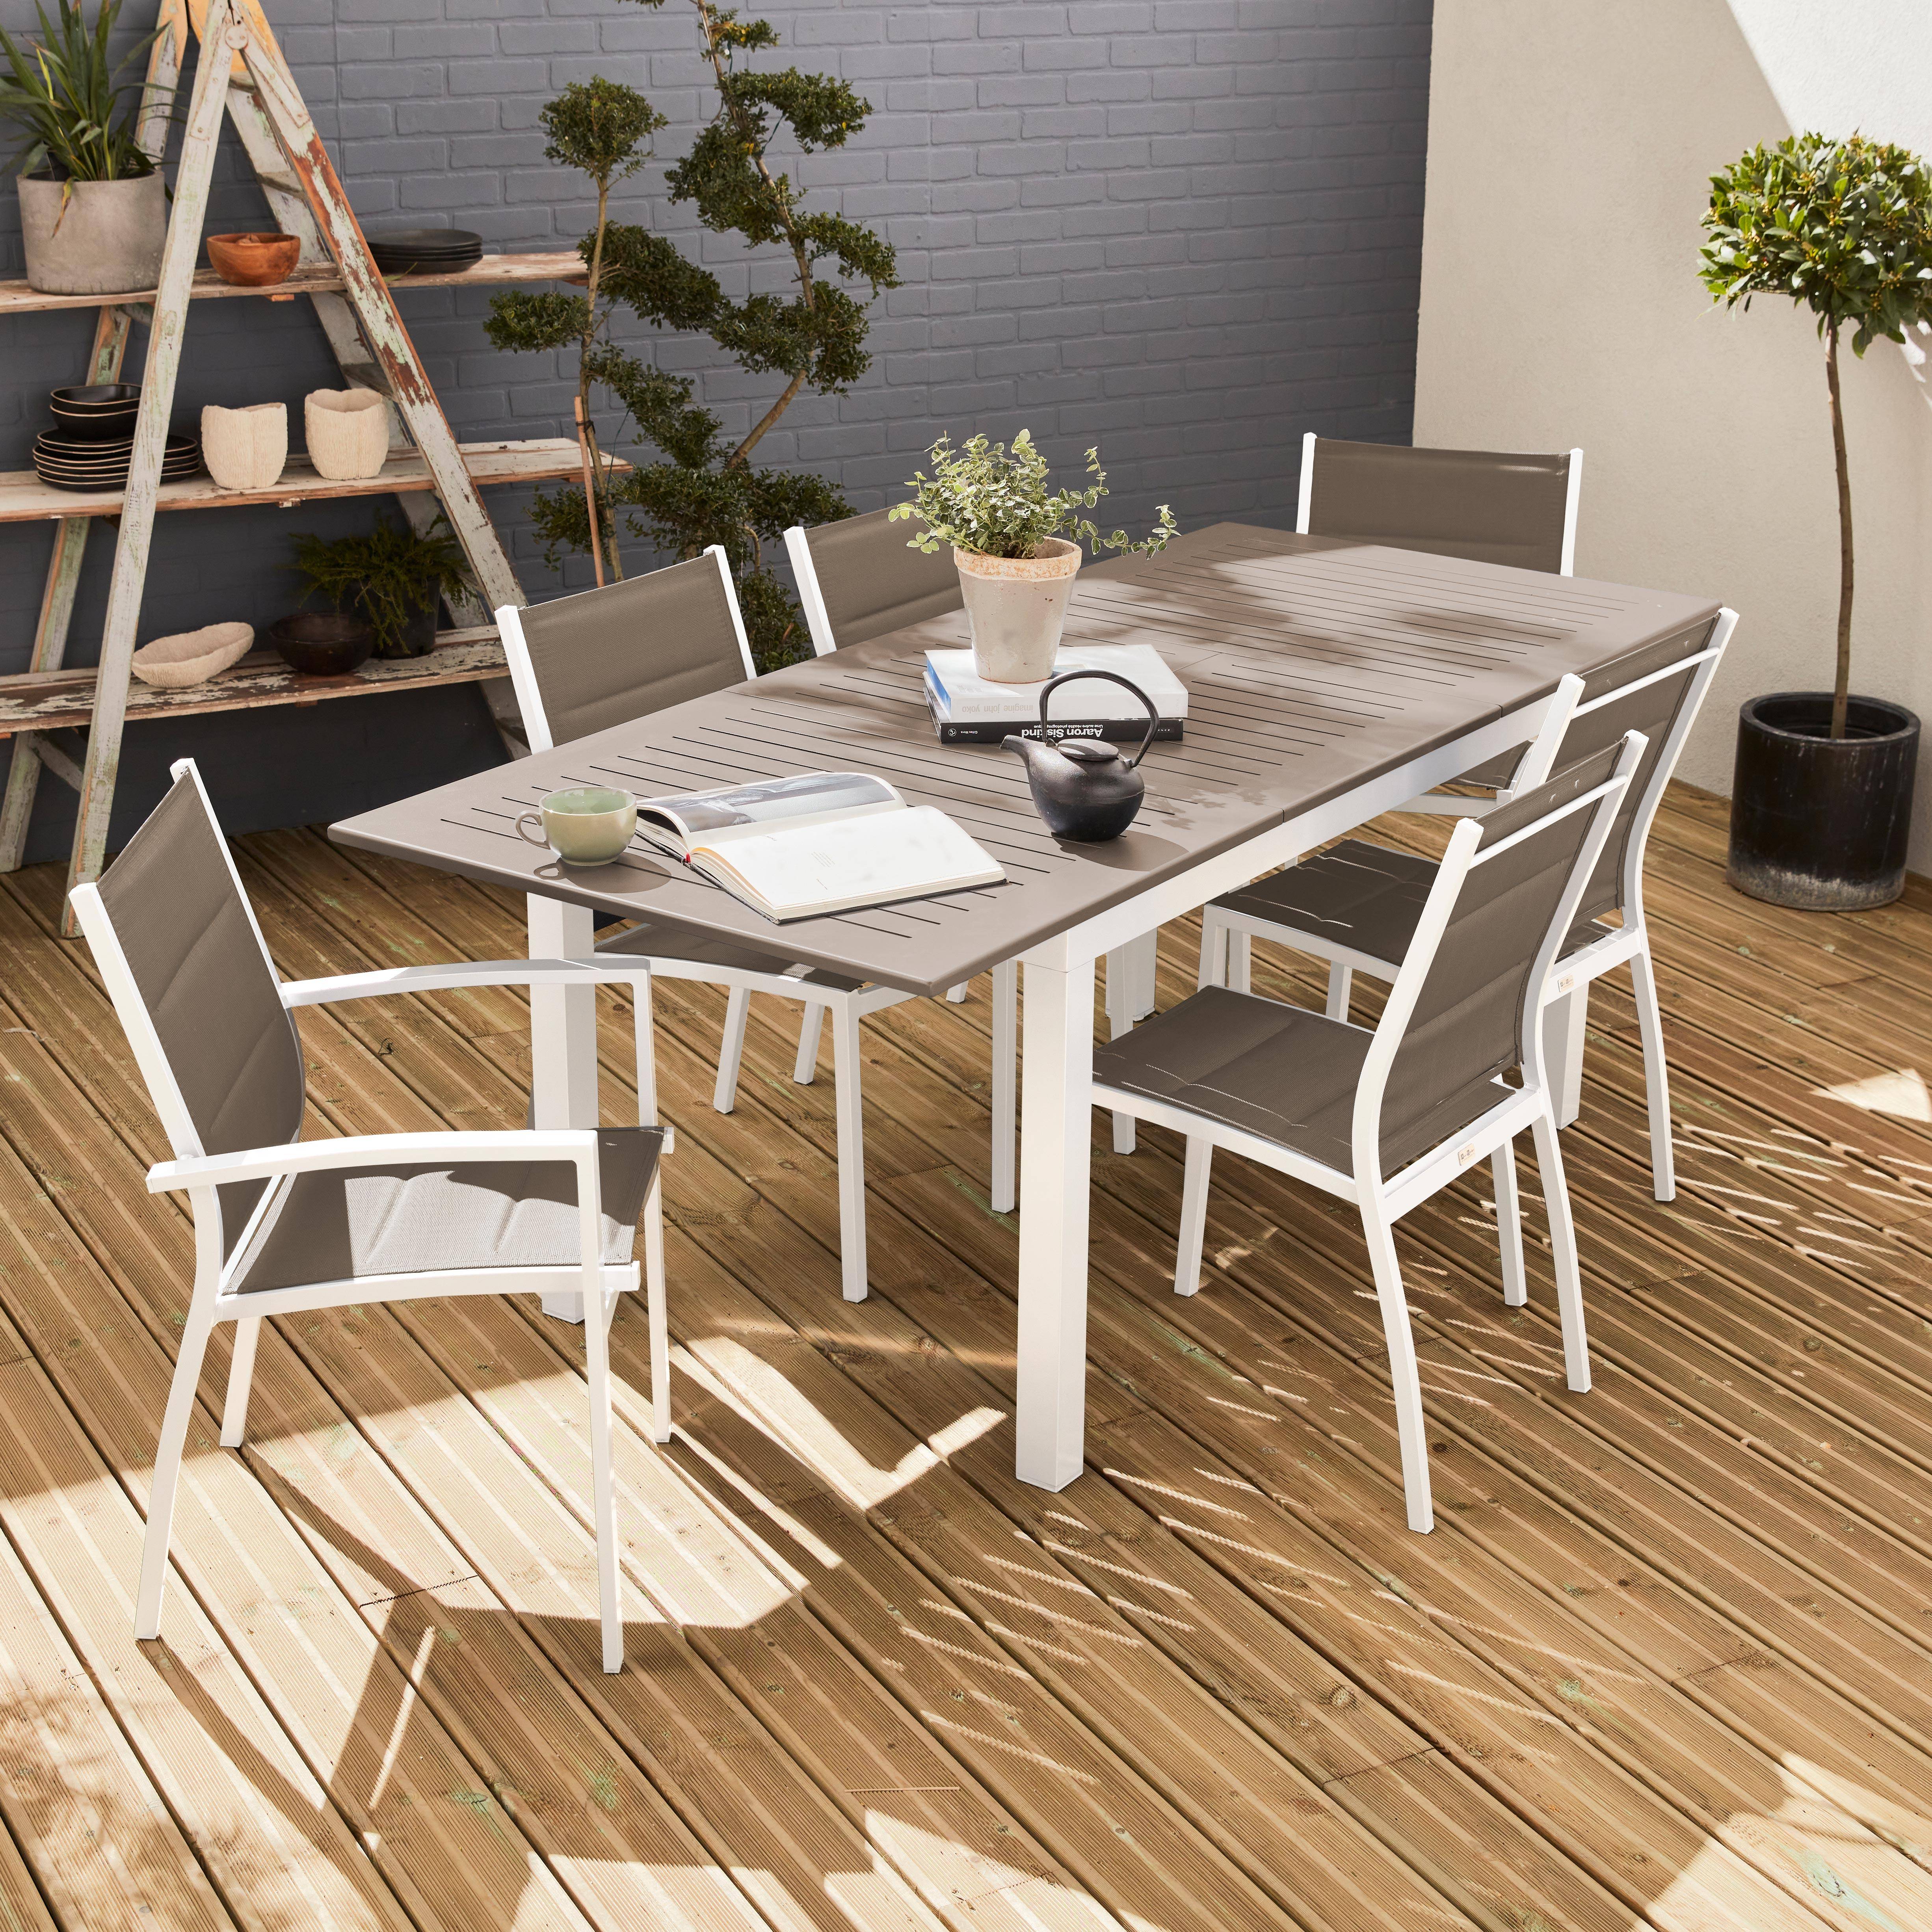 Set da giardino con tavolo allungabile - modello: Chicago 210, colore: Talpa - Tavolo in alluminio, dimensioni: 150/210cm con prolunga e 6 sedute in textilene,sweeek,Photo1